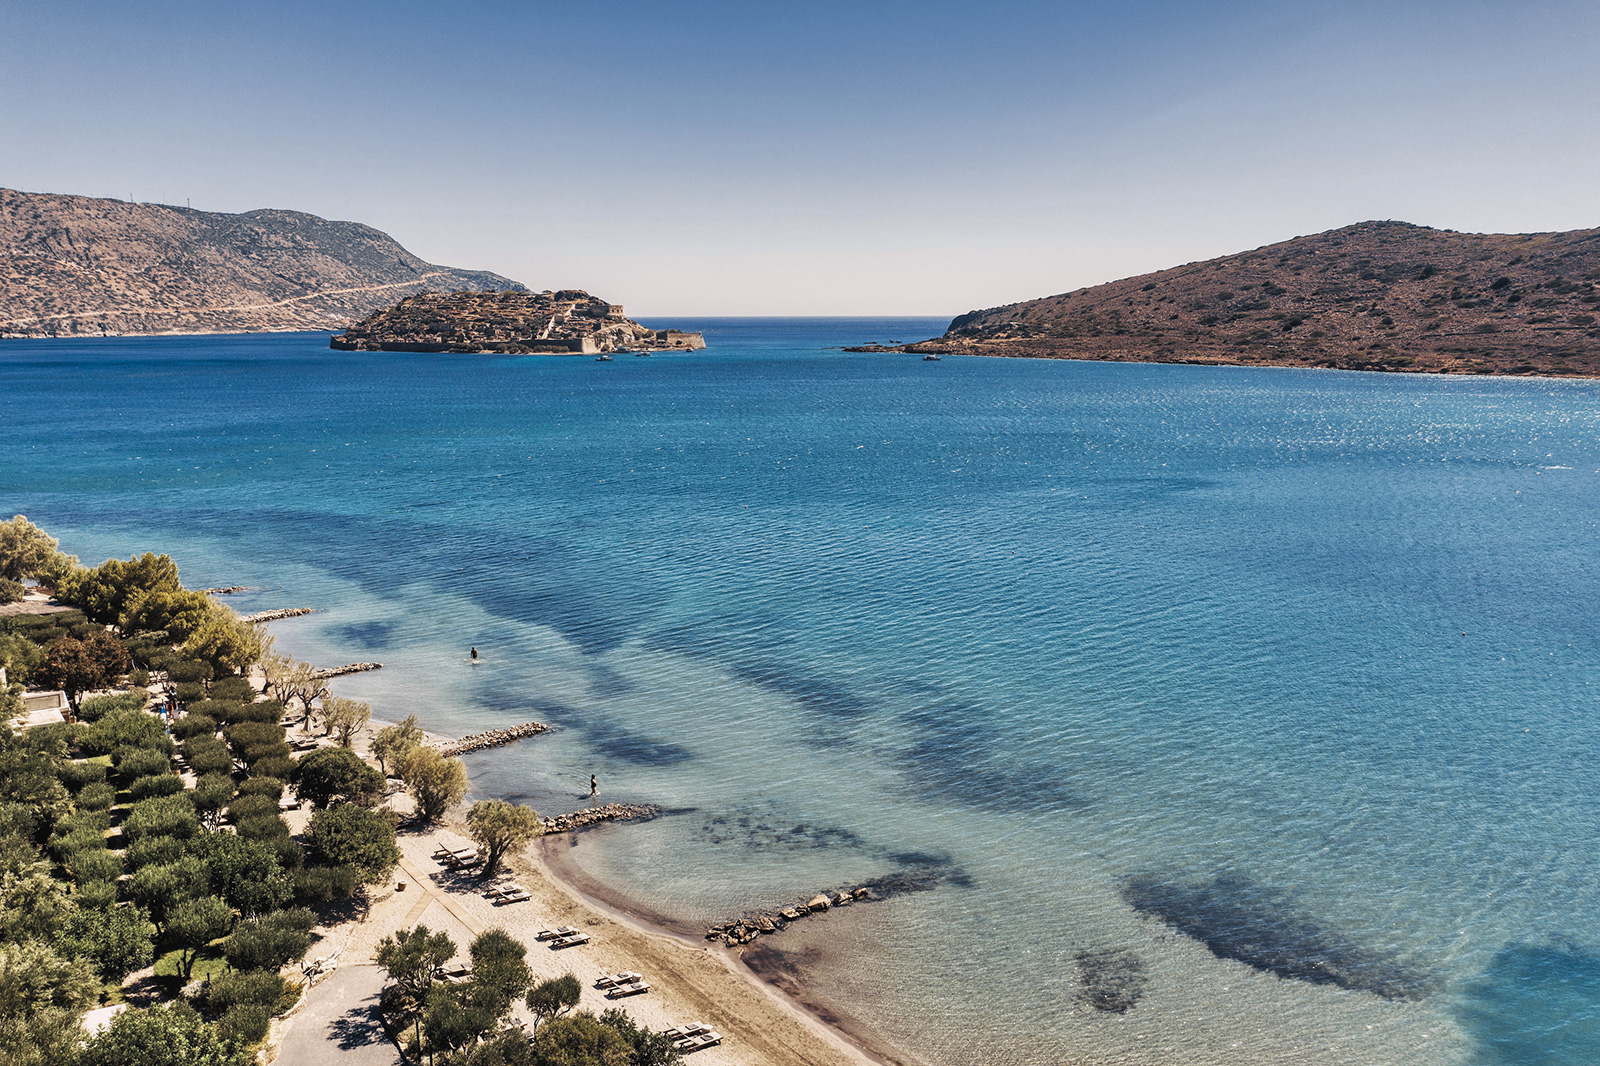 Ferienvilla mit Pool am Meer mieten auf Kreta Griechenland
